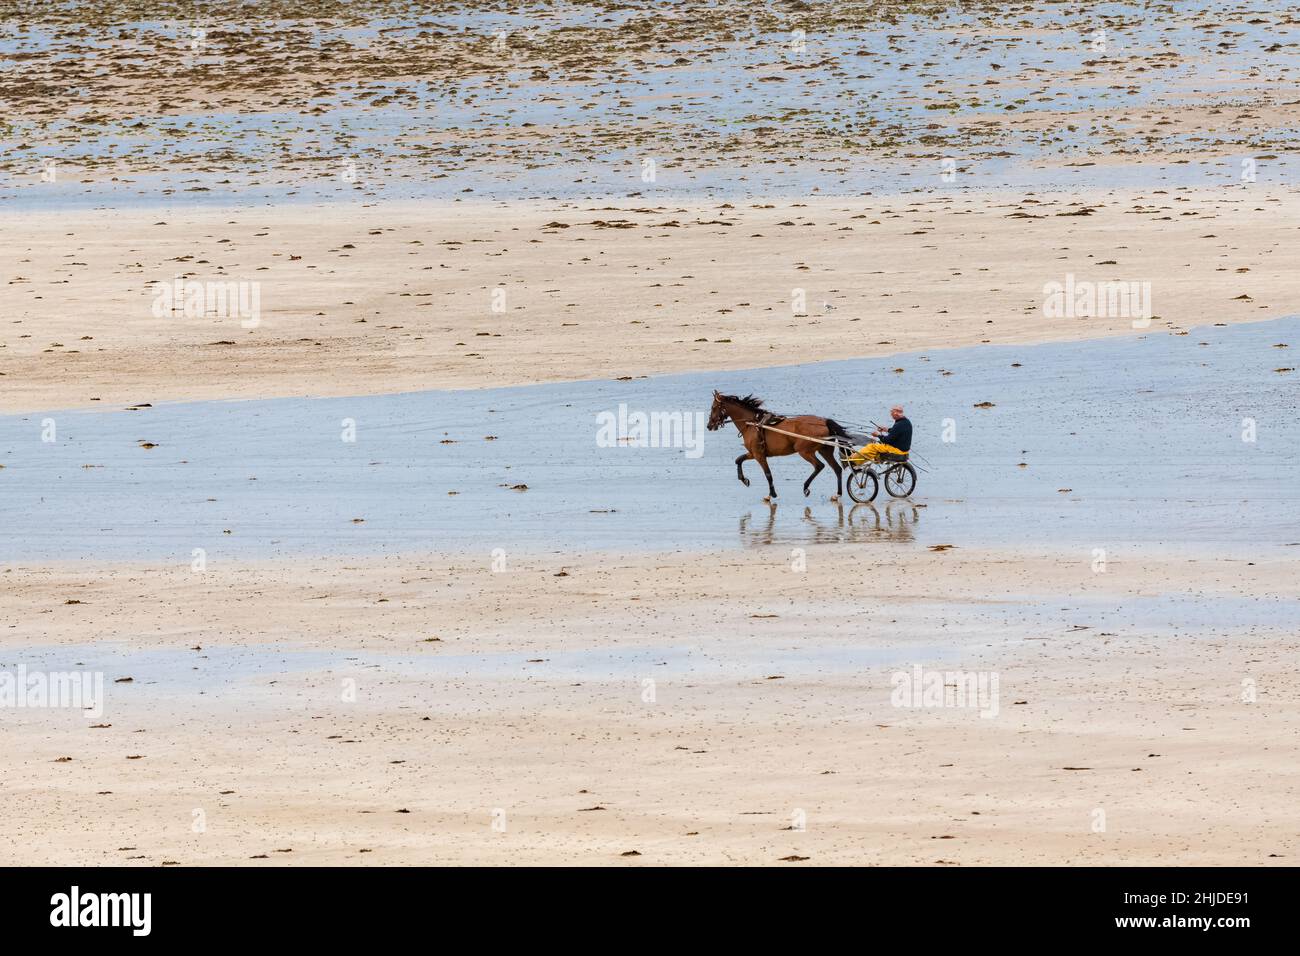 Schöner Strand in Agon-Coutainville in der Normandie, mit einem Pferd und einem Reiter Stockfoto